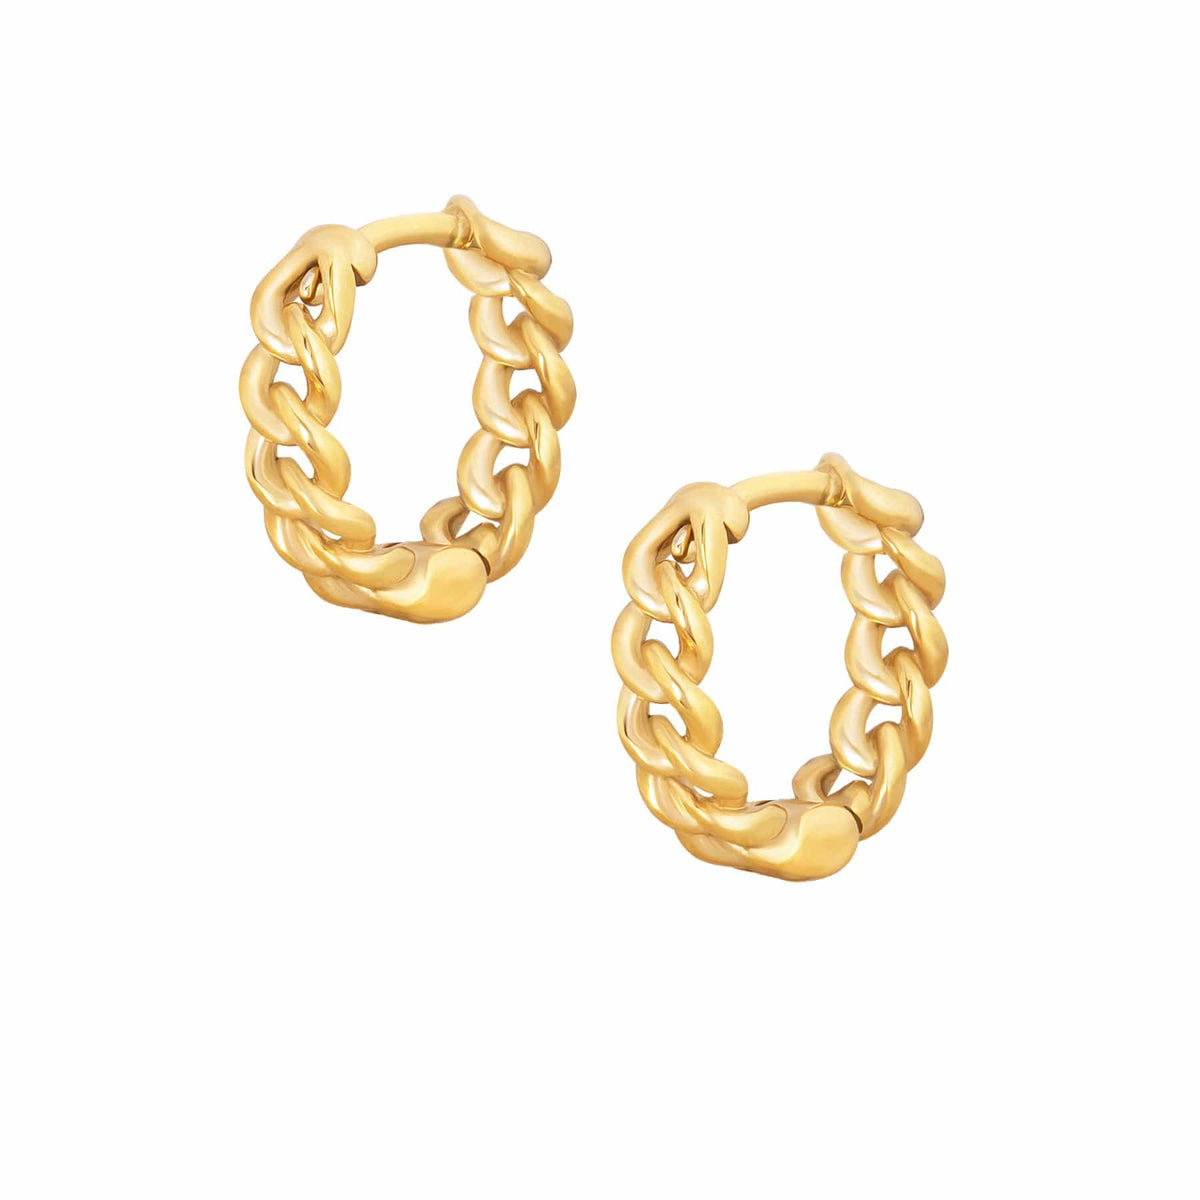 BohoMoon Stainless Steel Dana Chain Hoop Earrings Gold